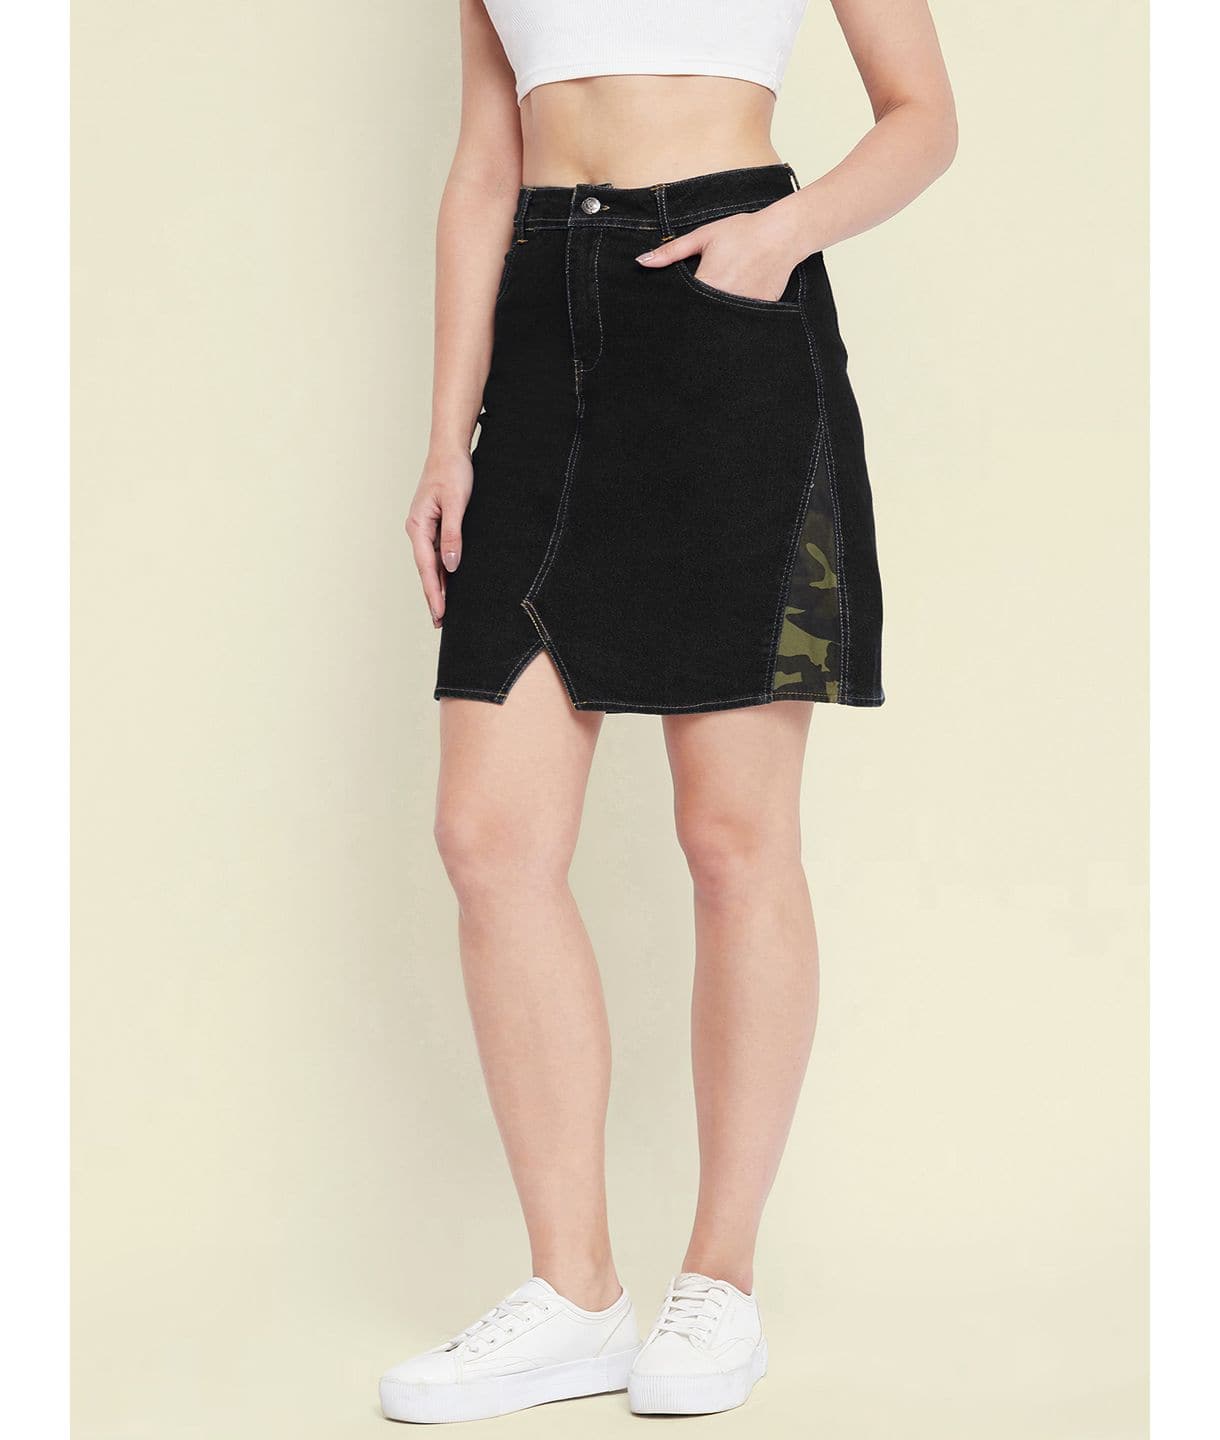 Buy Allegra K Women's Casual Denim Skirt Side Slit High Waisted Knee Length  Jean Skirts, Black, Medium at Amazon.in